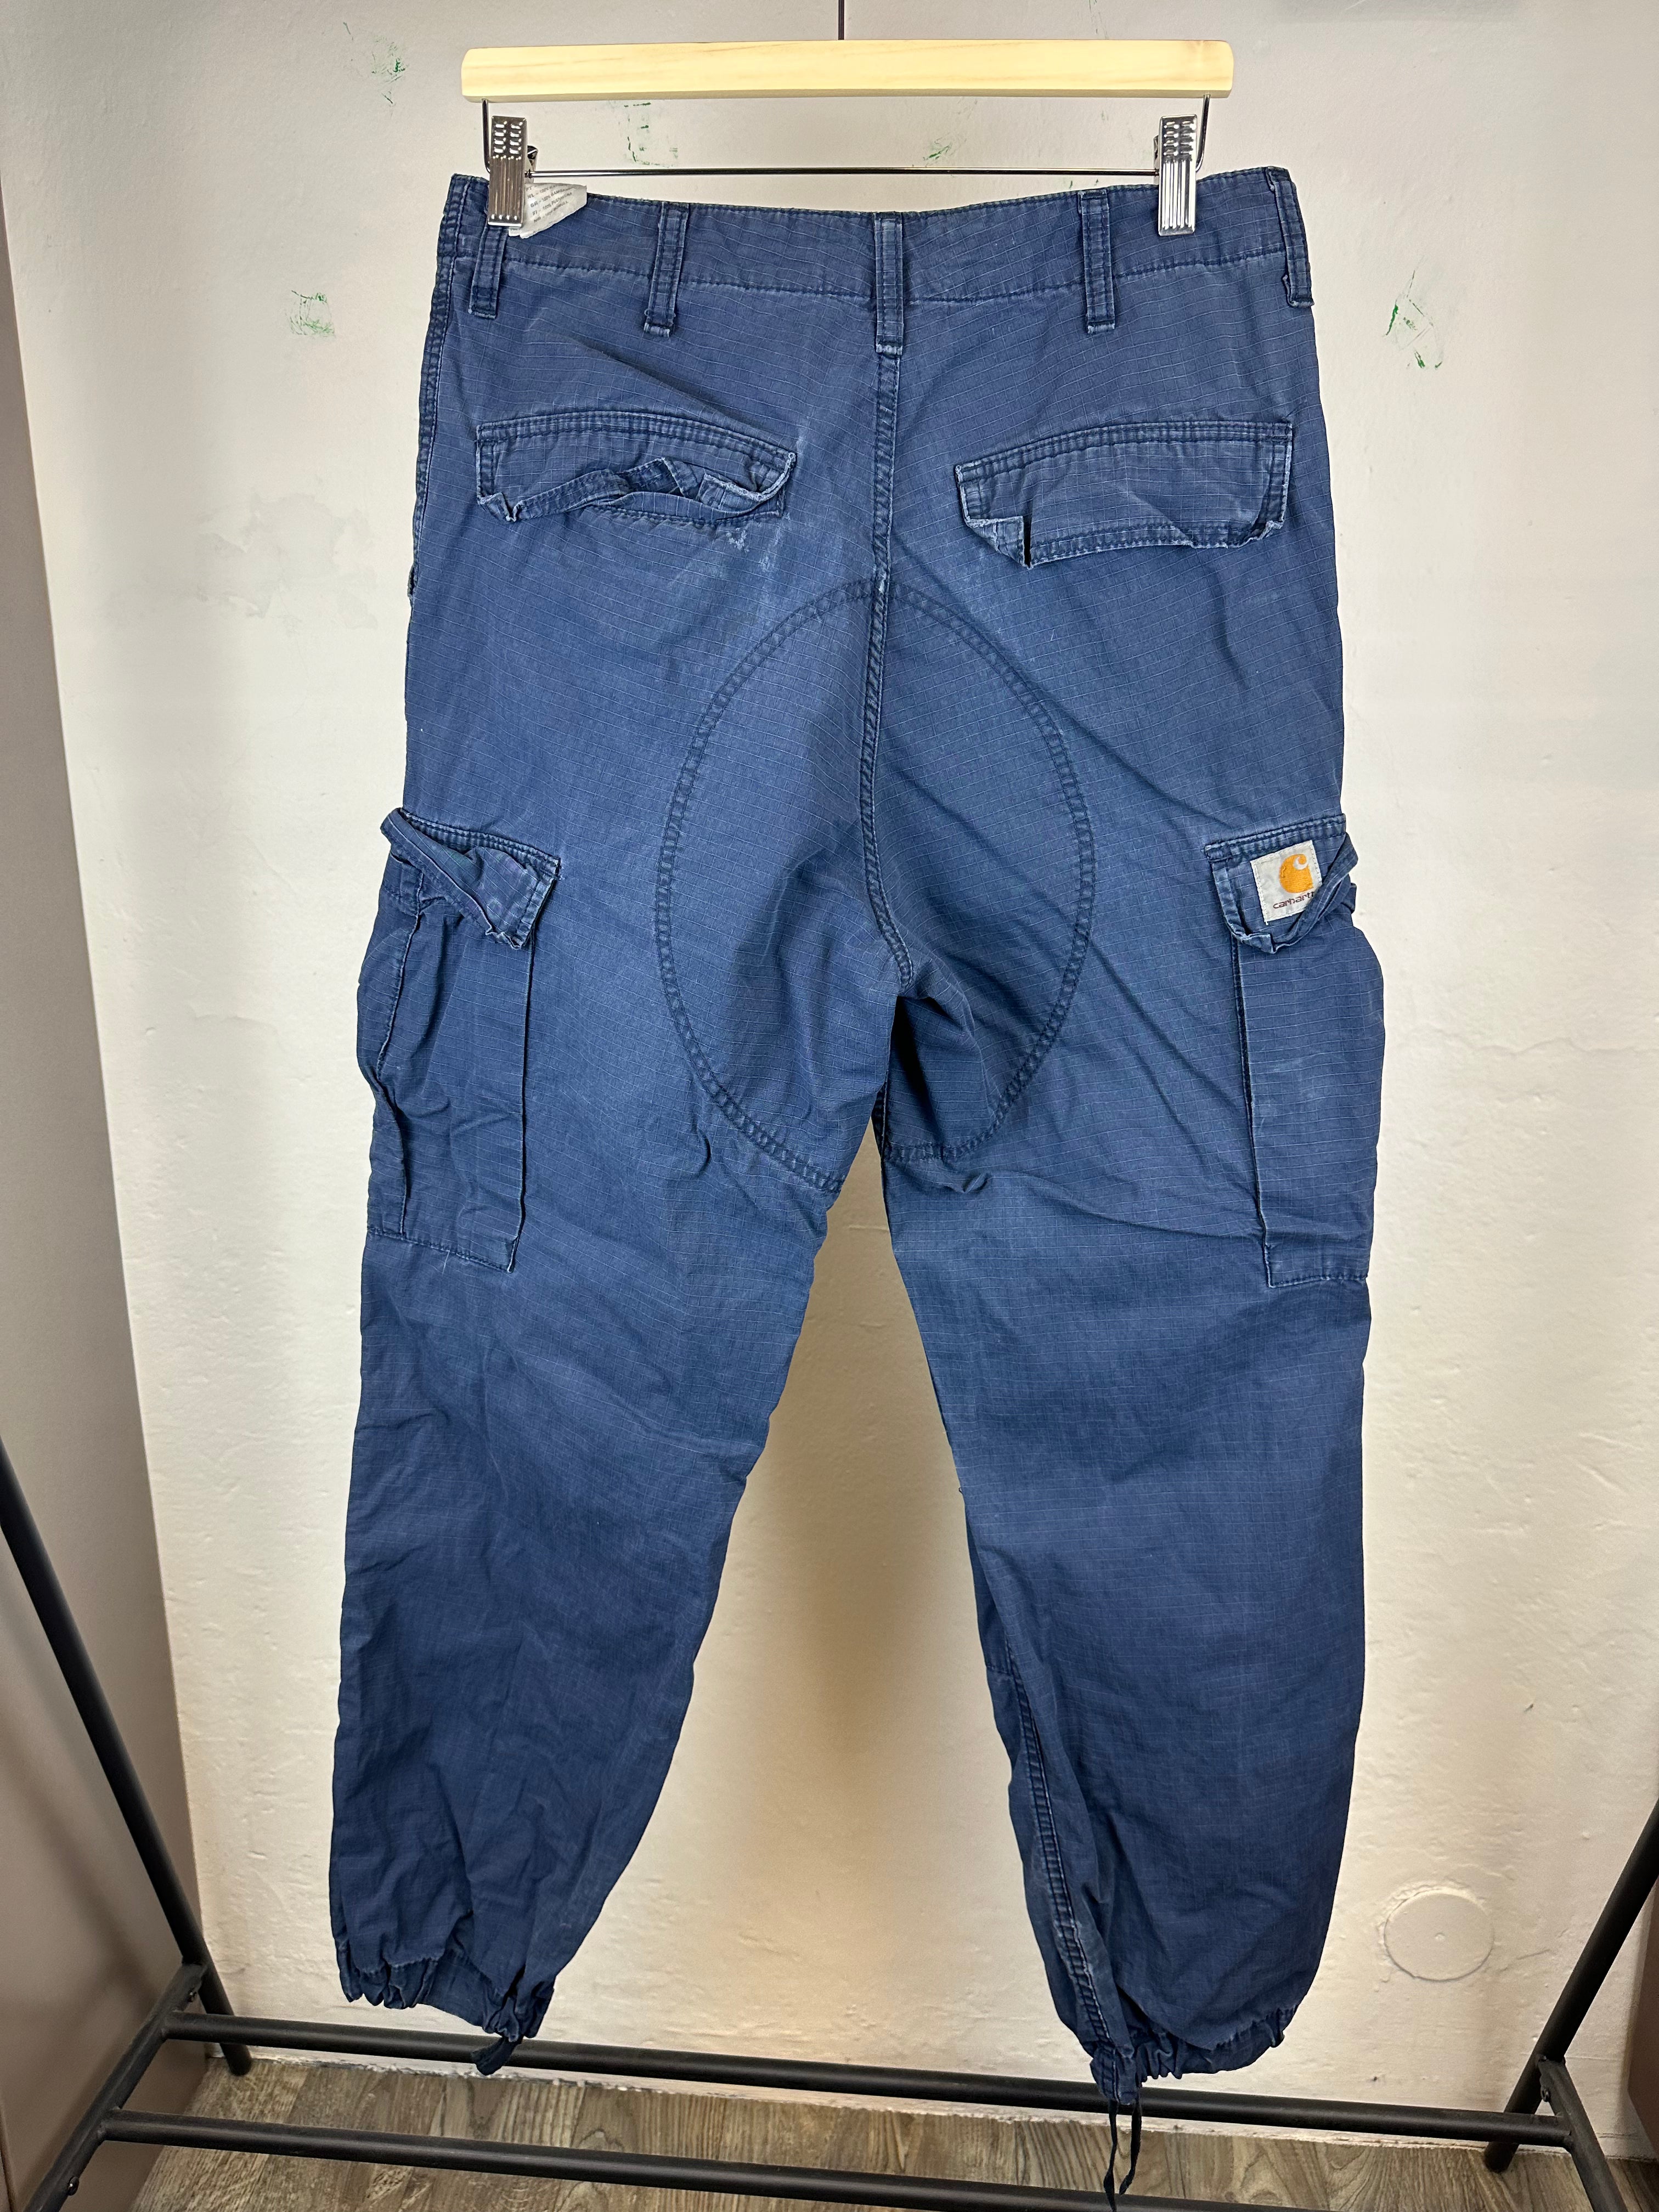 Vintage Carhartt Cargo Pants - size 30x32